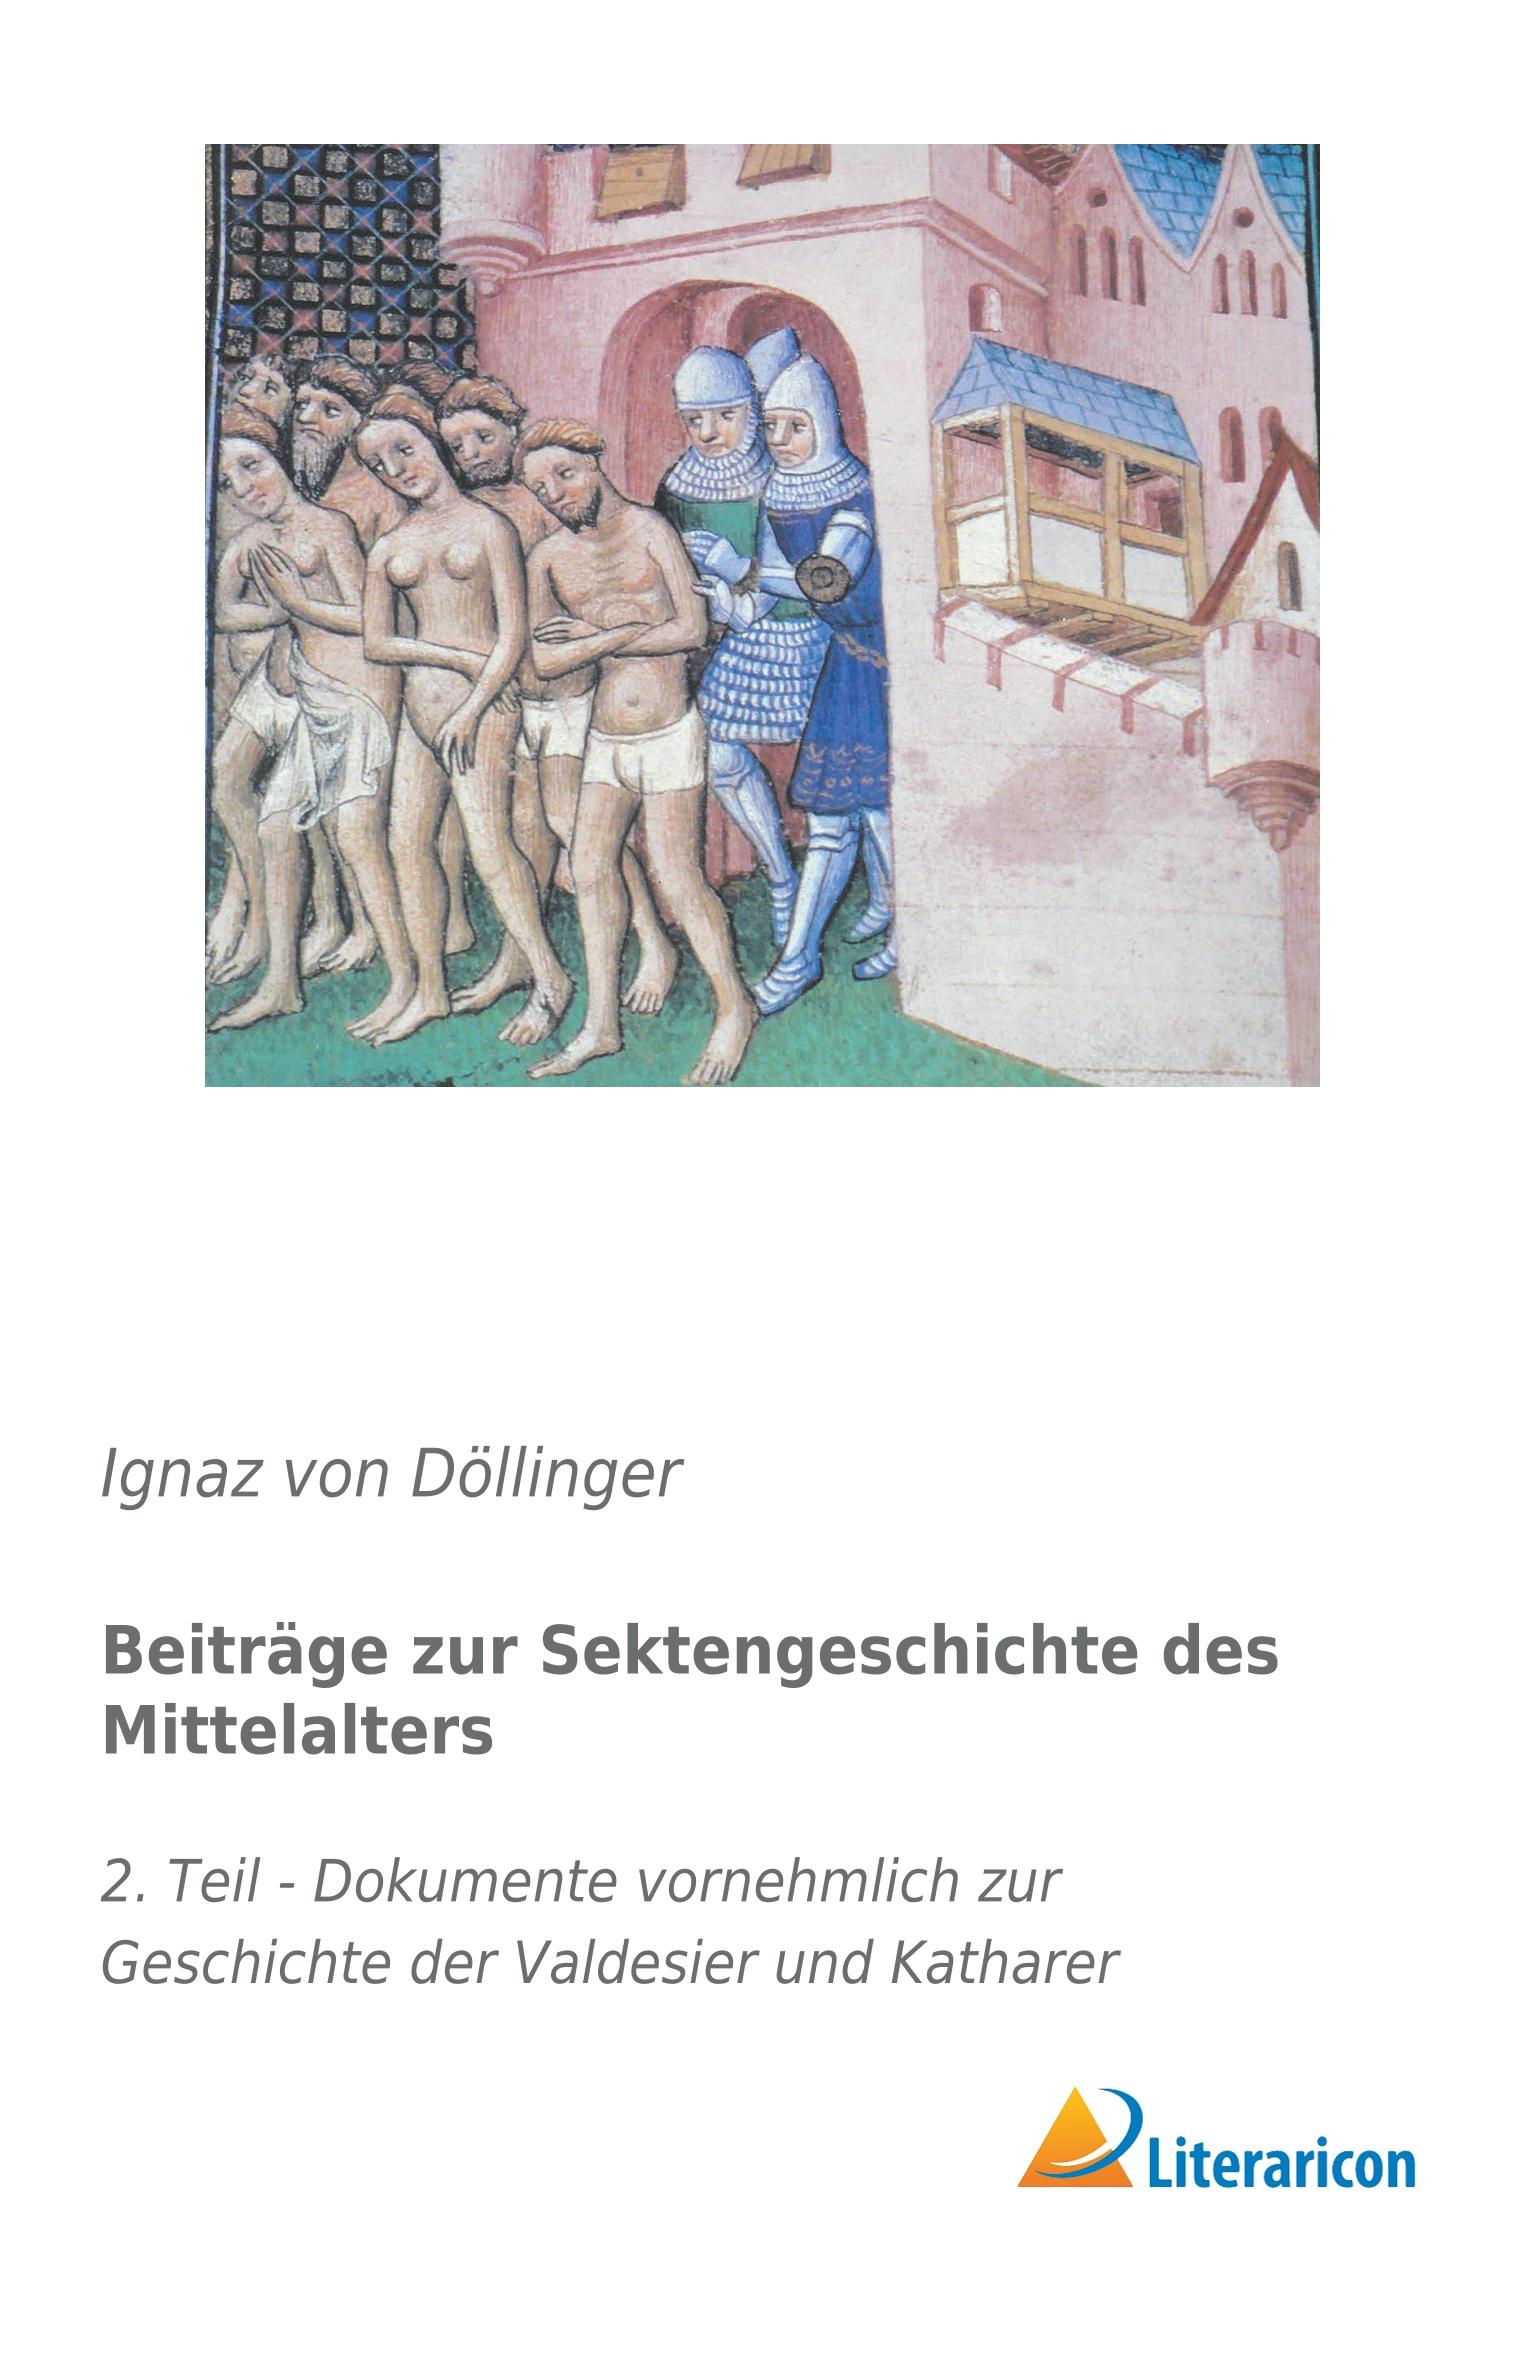 Beitraege zur Sektengeschichte des Mittelalters - Döllinger, Ignaz von